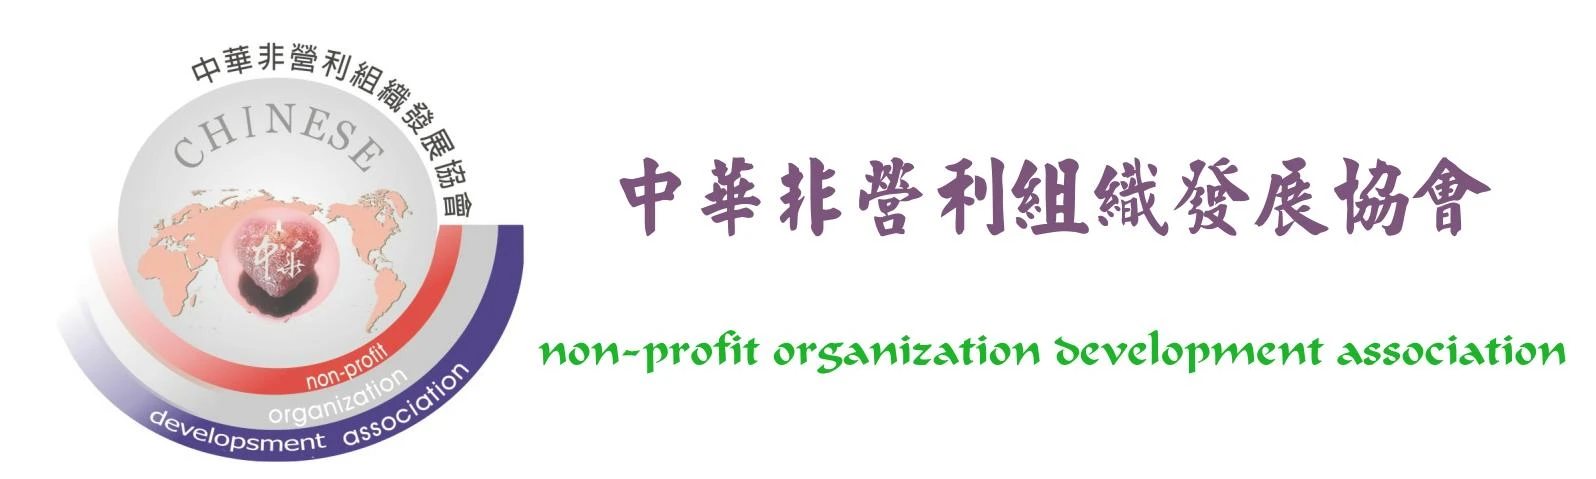 中華非營利組織發展協會圖4